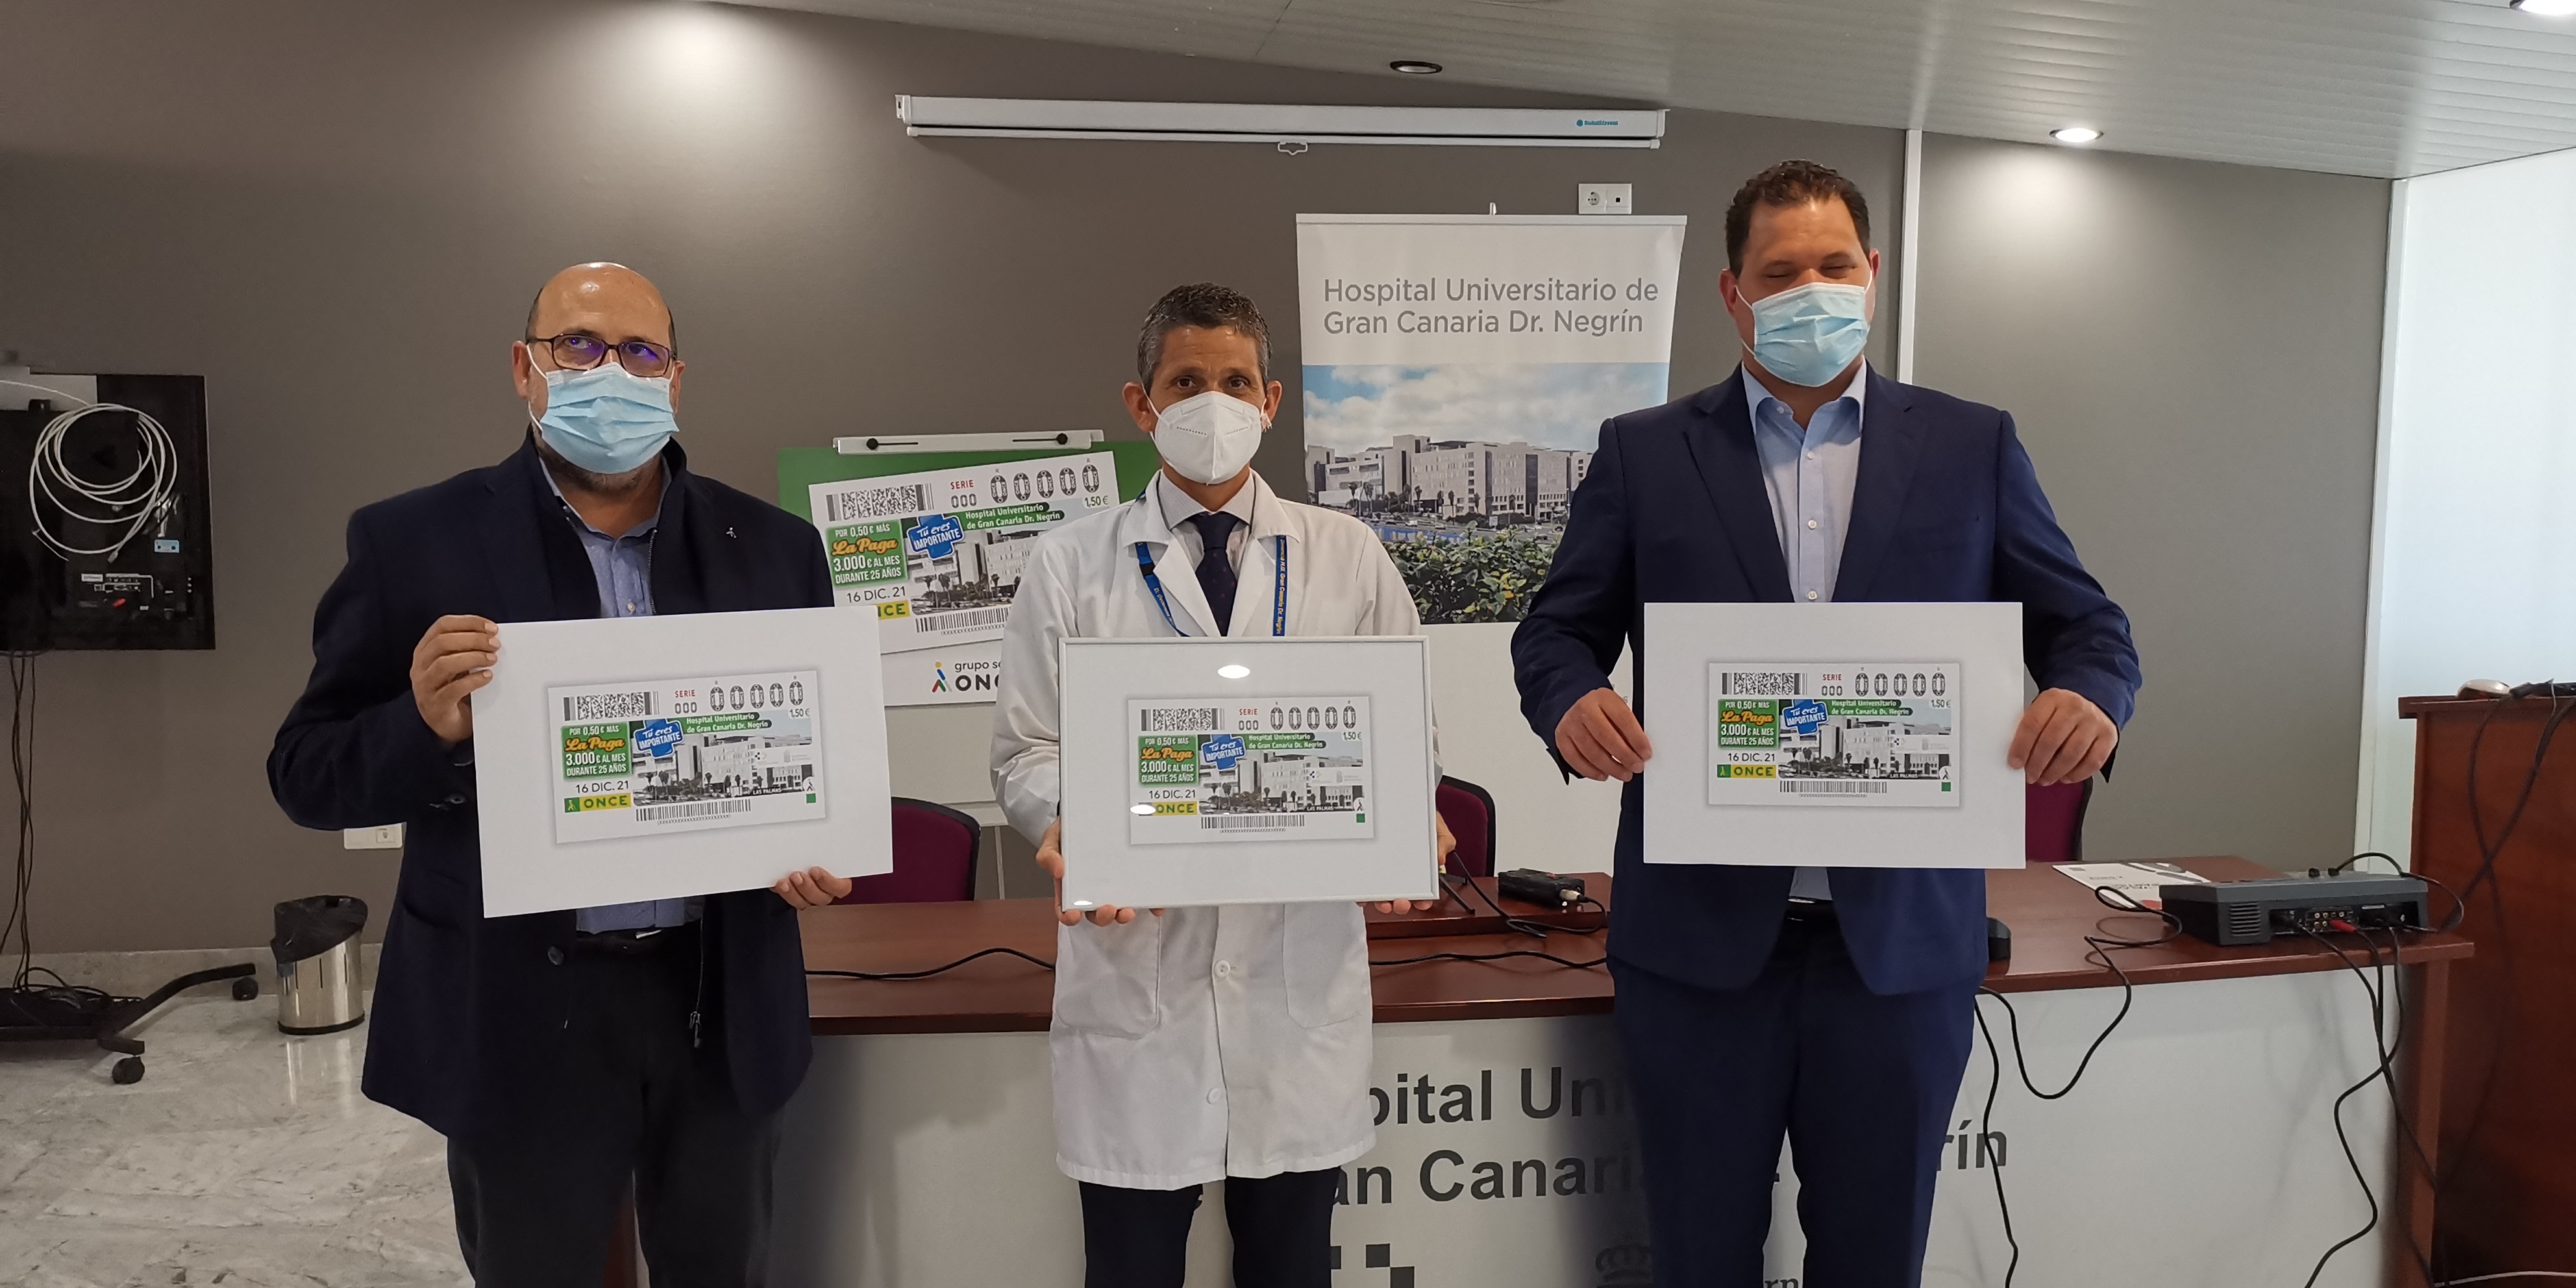 El cupón de la ONCE homenajea al personal del Hospital Universitario de Gran Canaria Doctor Negrín